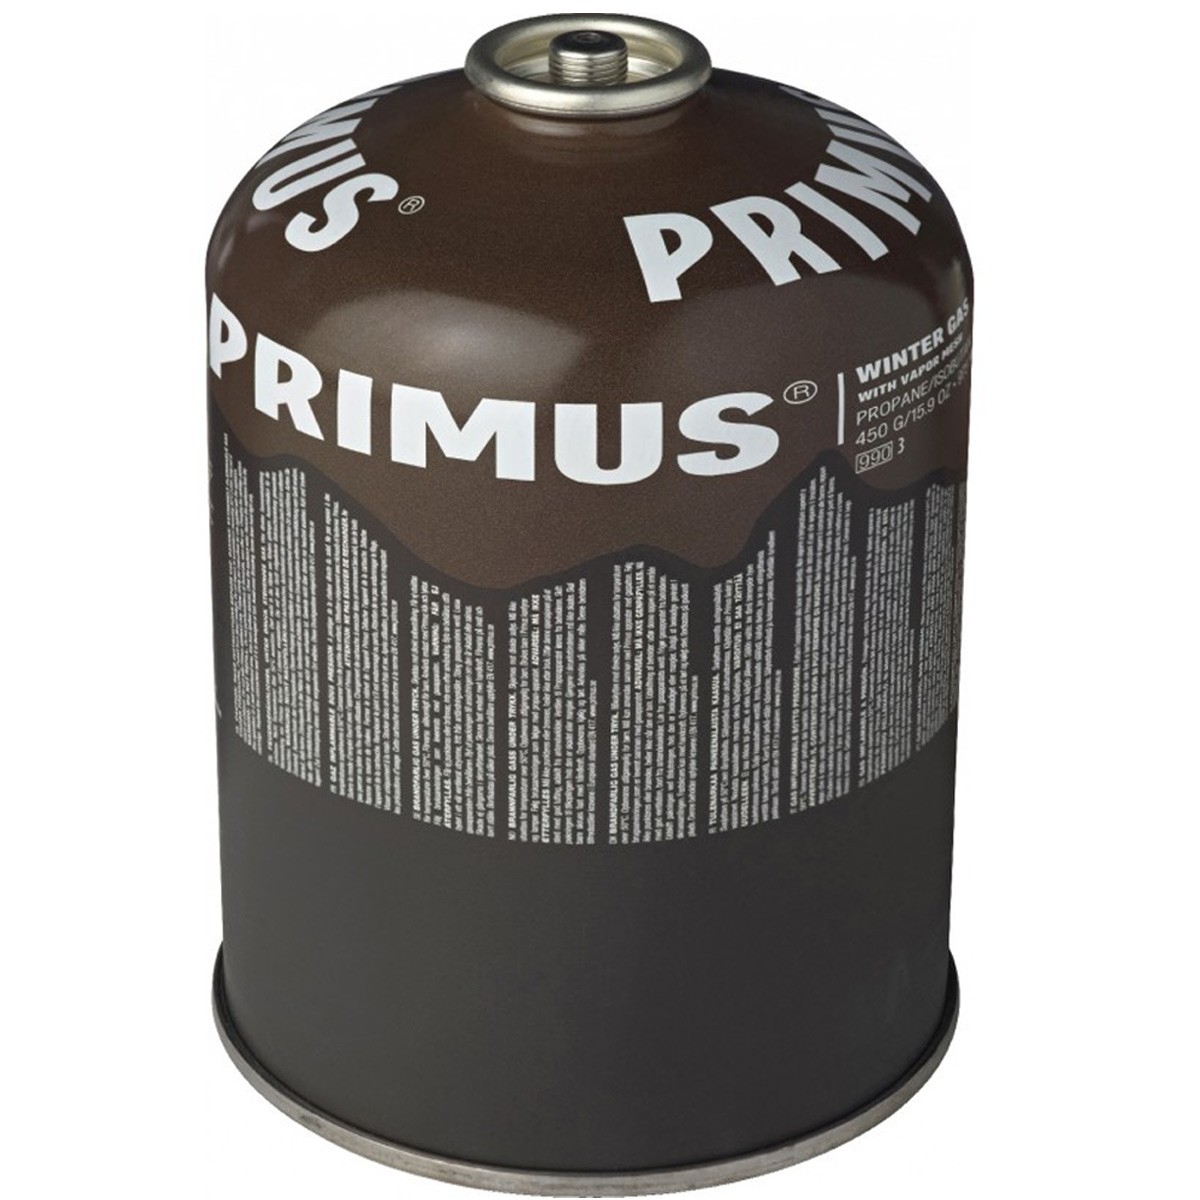 Kartusche 450g Winter Gas von Primus